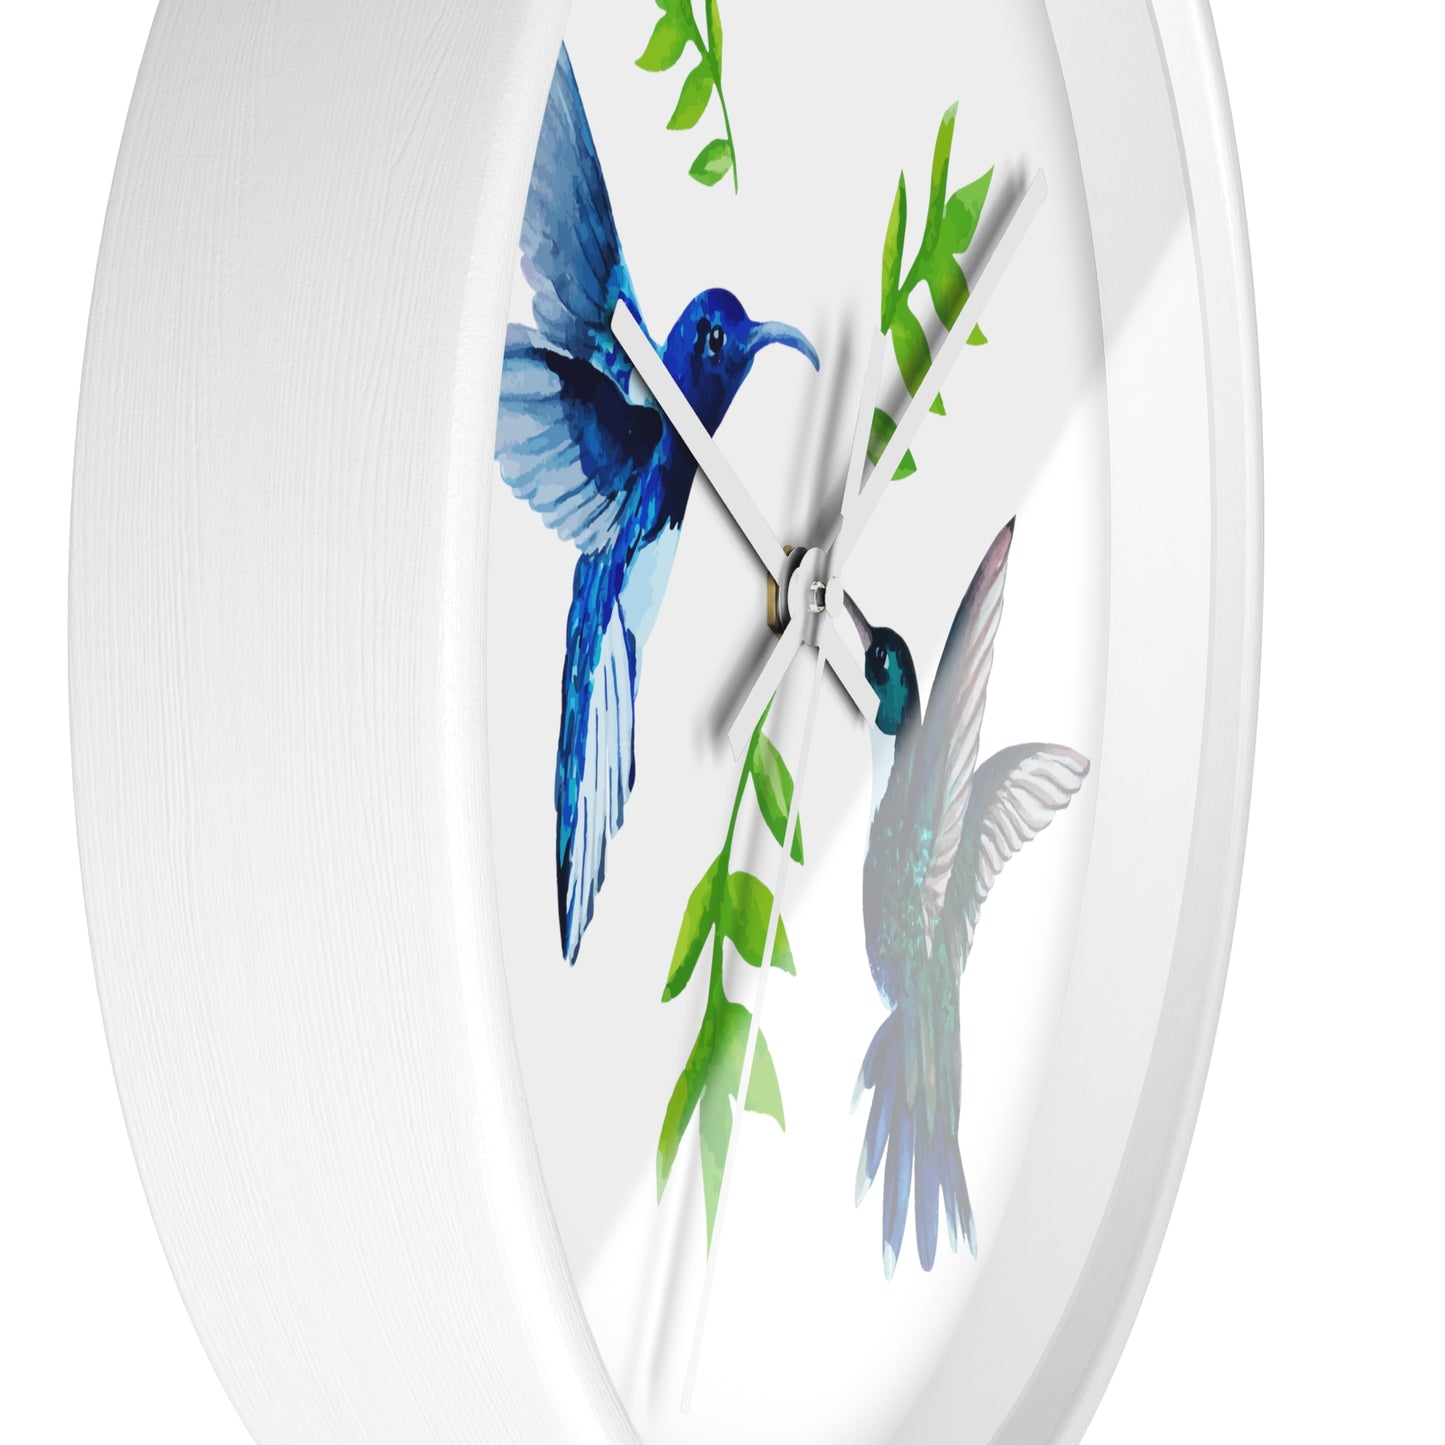 Watercolor Hummingbirds Time Wall Clock - Expressive DeZien 